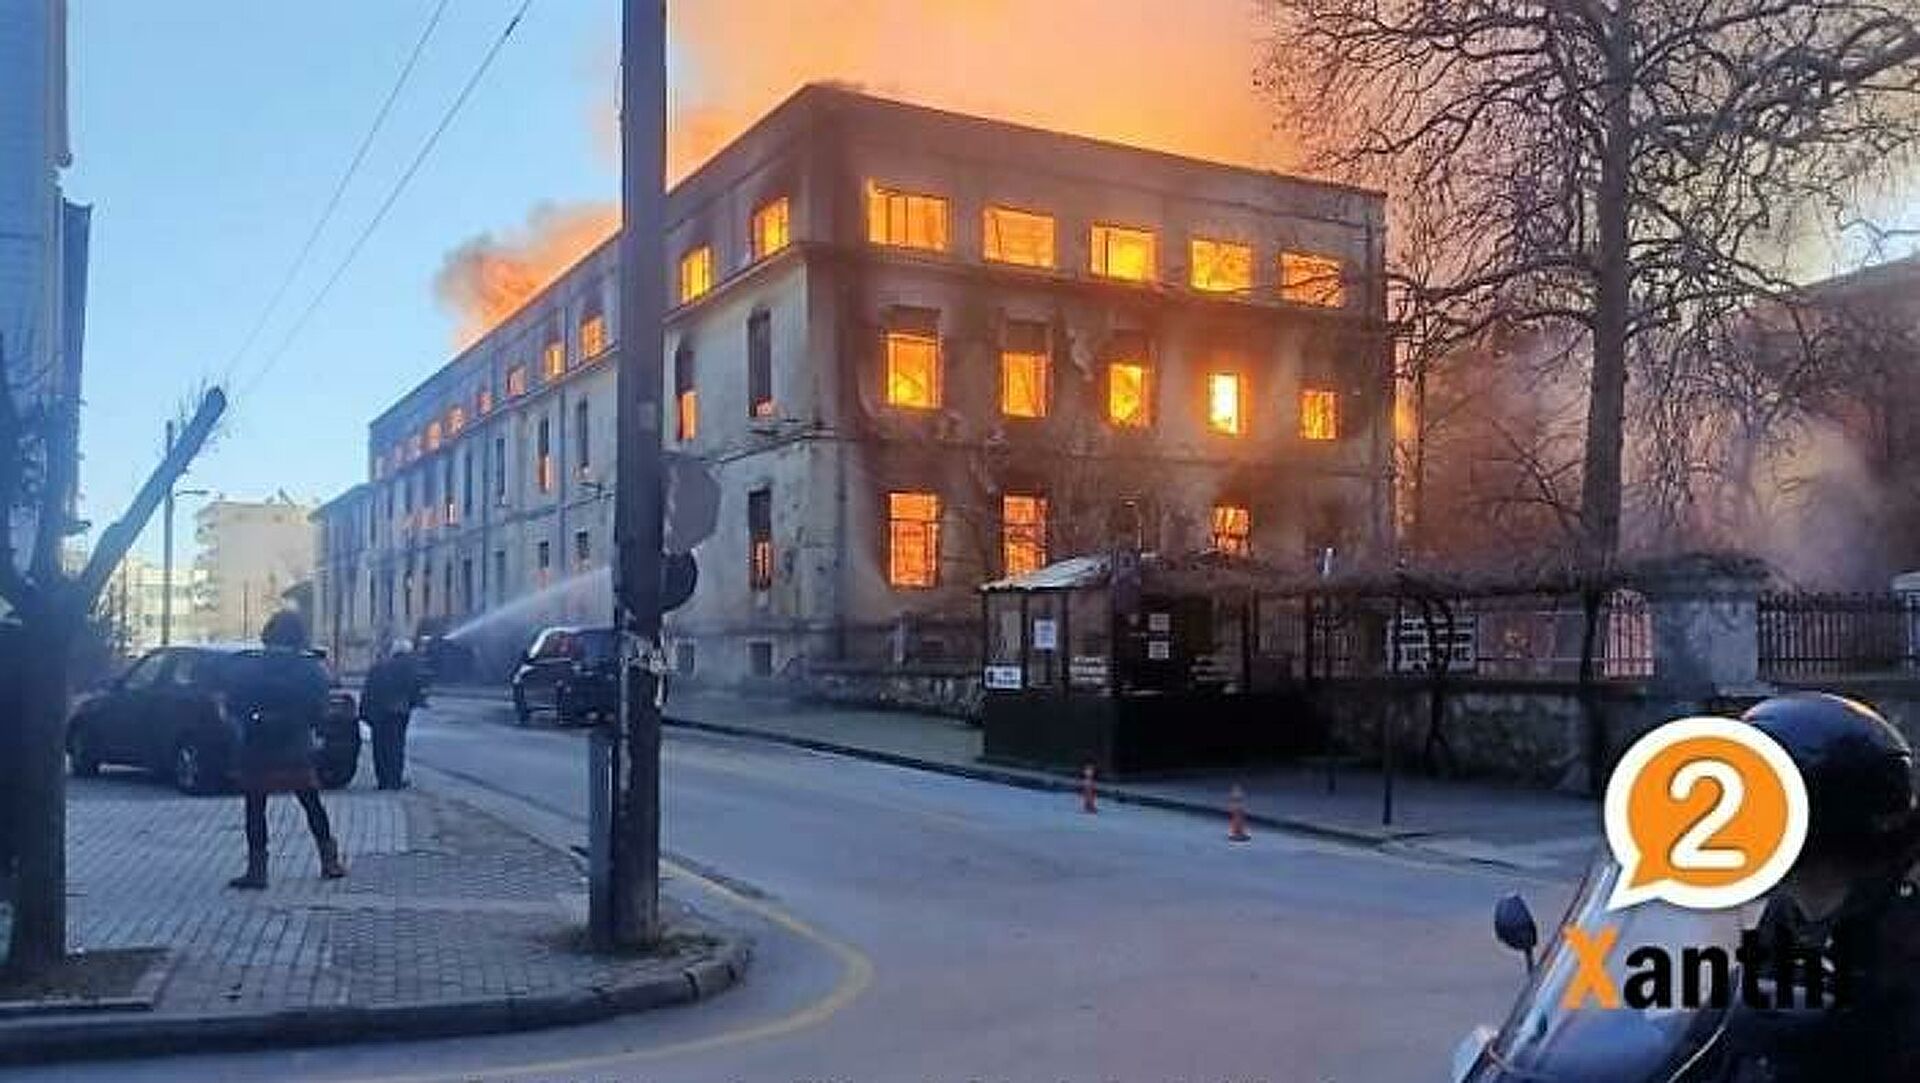 Μεγάλη πυρκαγιά σε κτίριο στην Ξάνθη - Τεράστιοι καπνοί έκρυψαν τον ουρανό